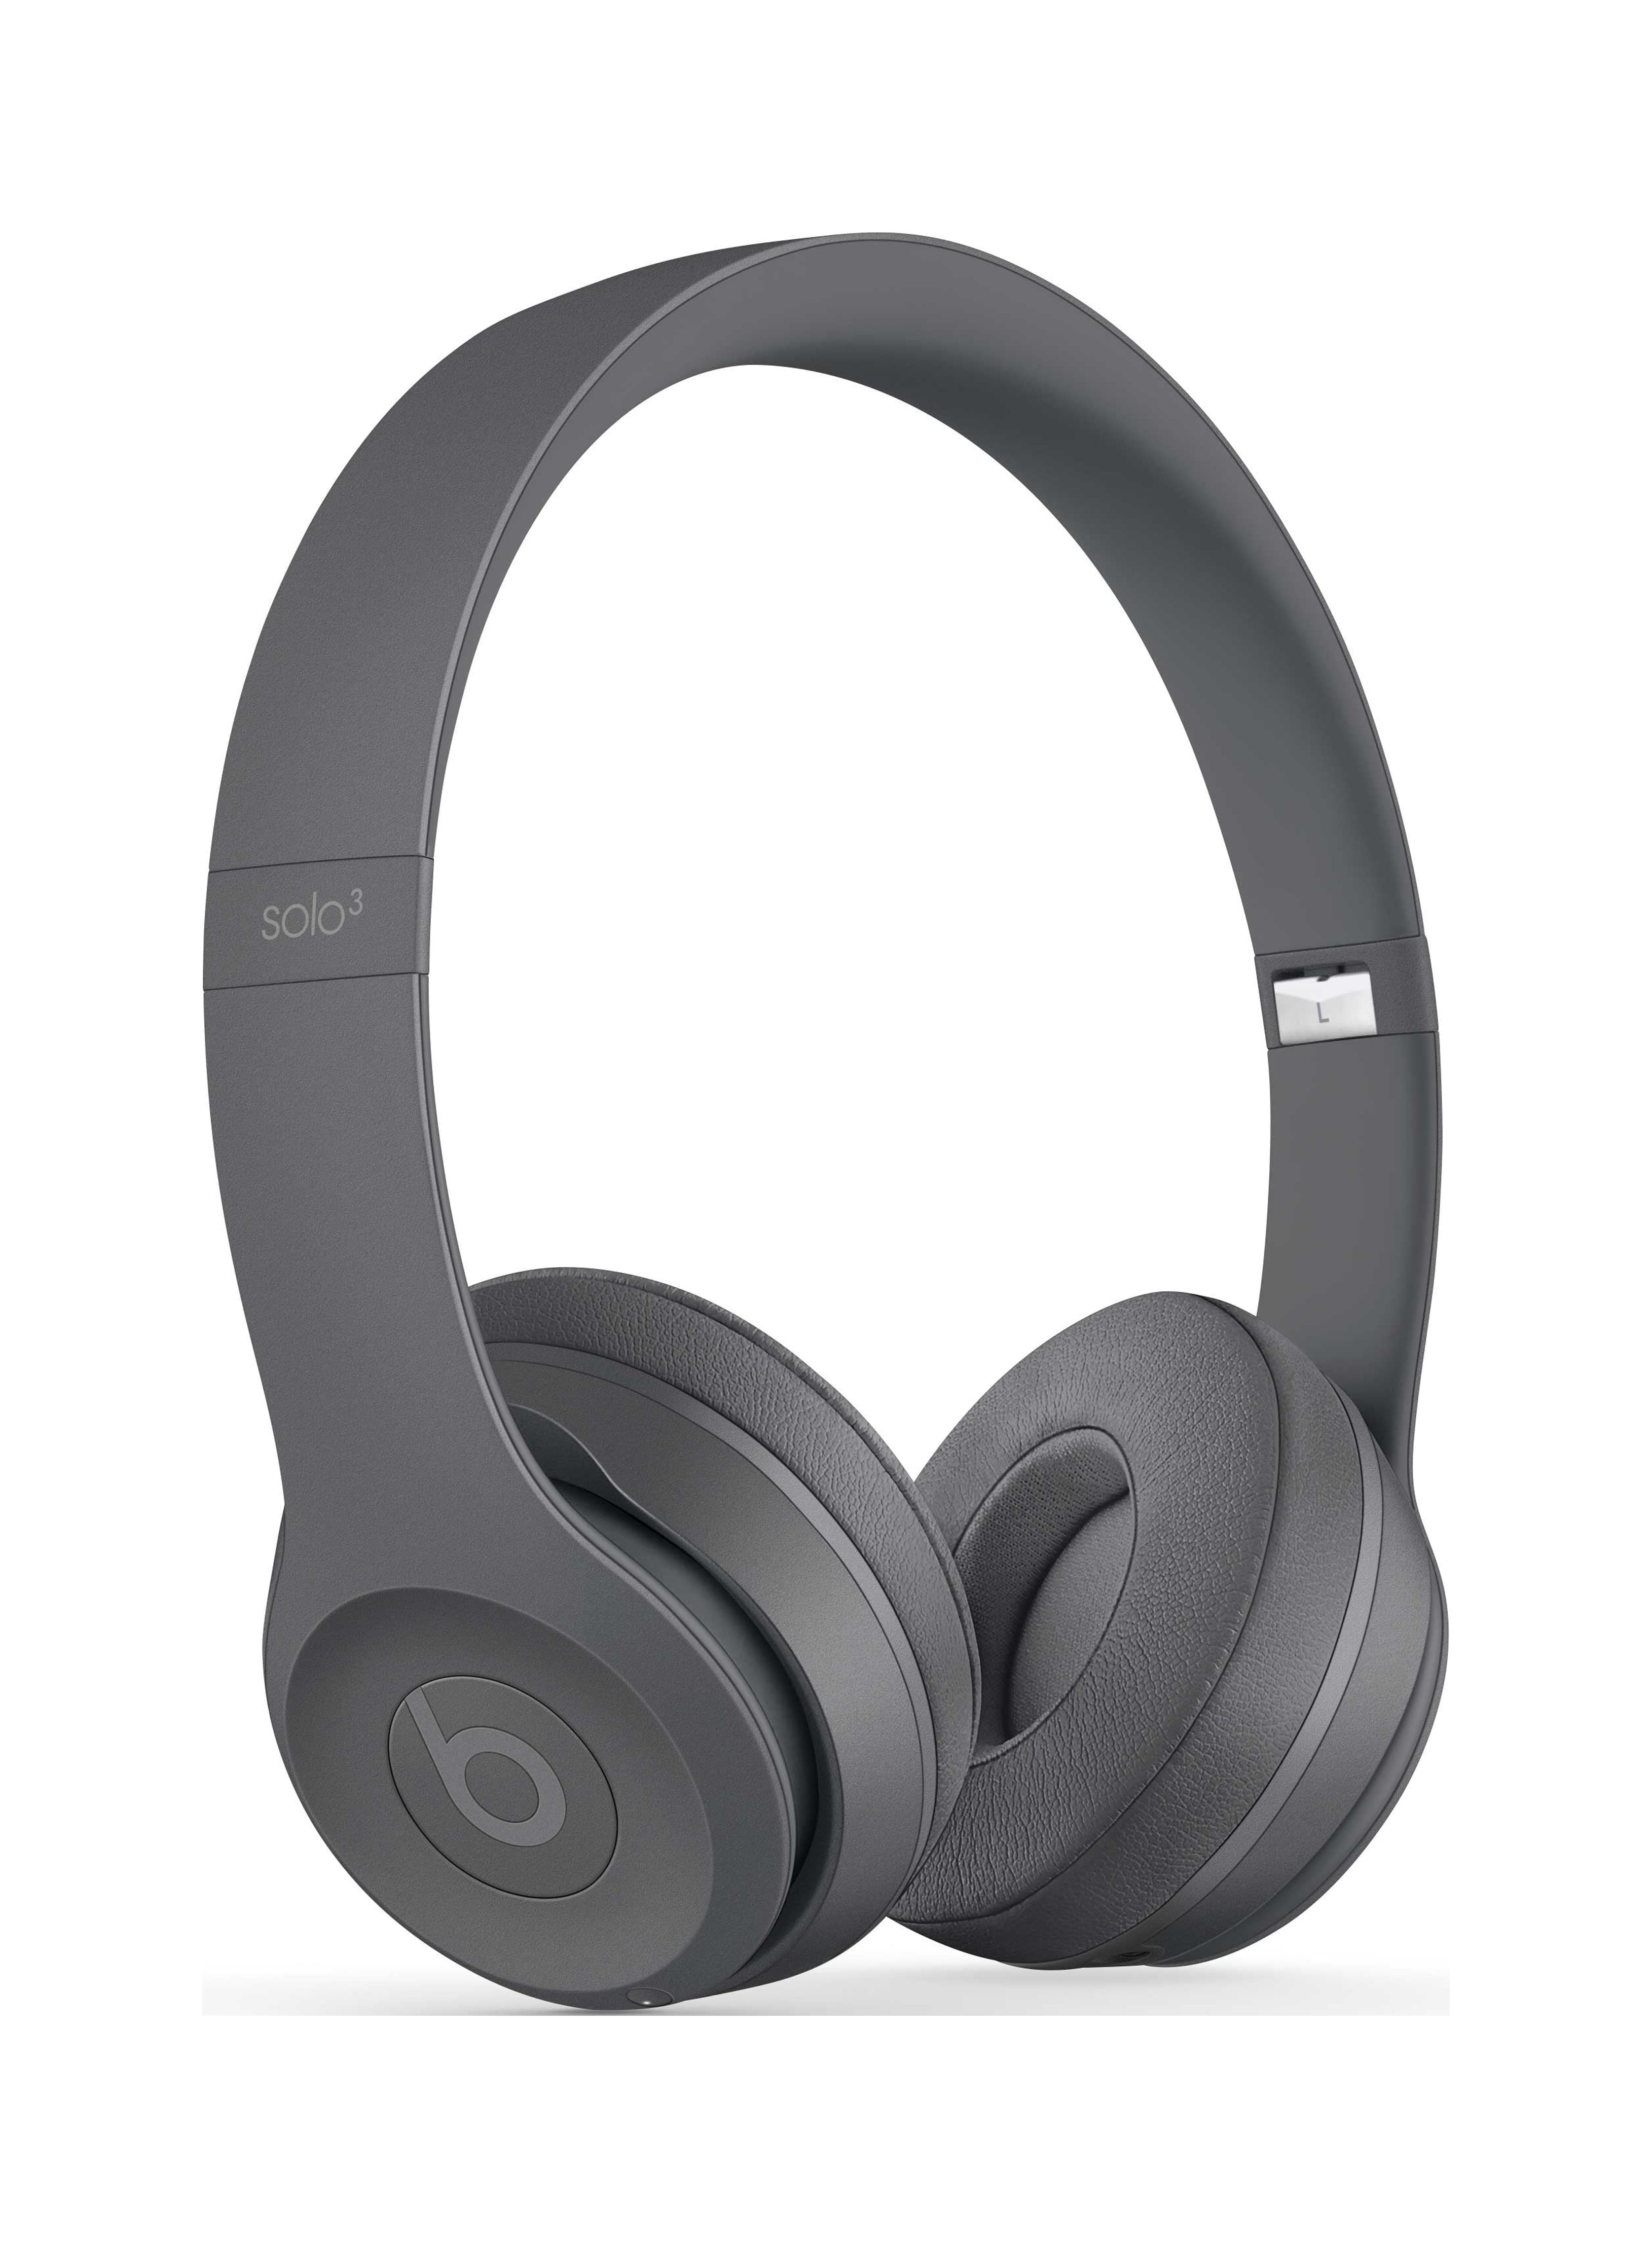 Beats Solo3 Wireless On-Ear Headphones - Neighborhood Collection - image 5 of 10